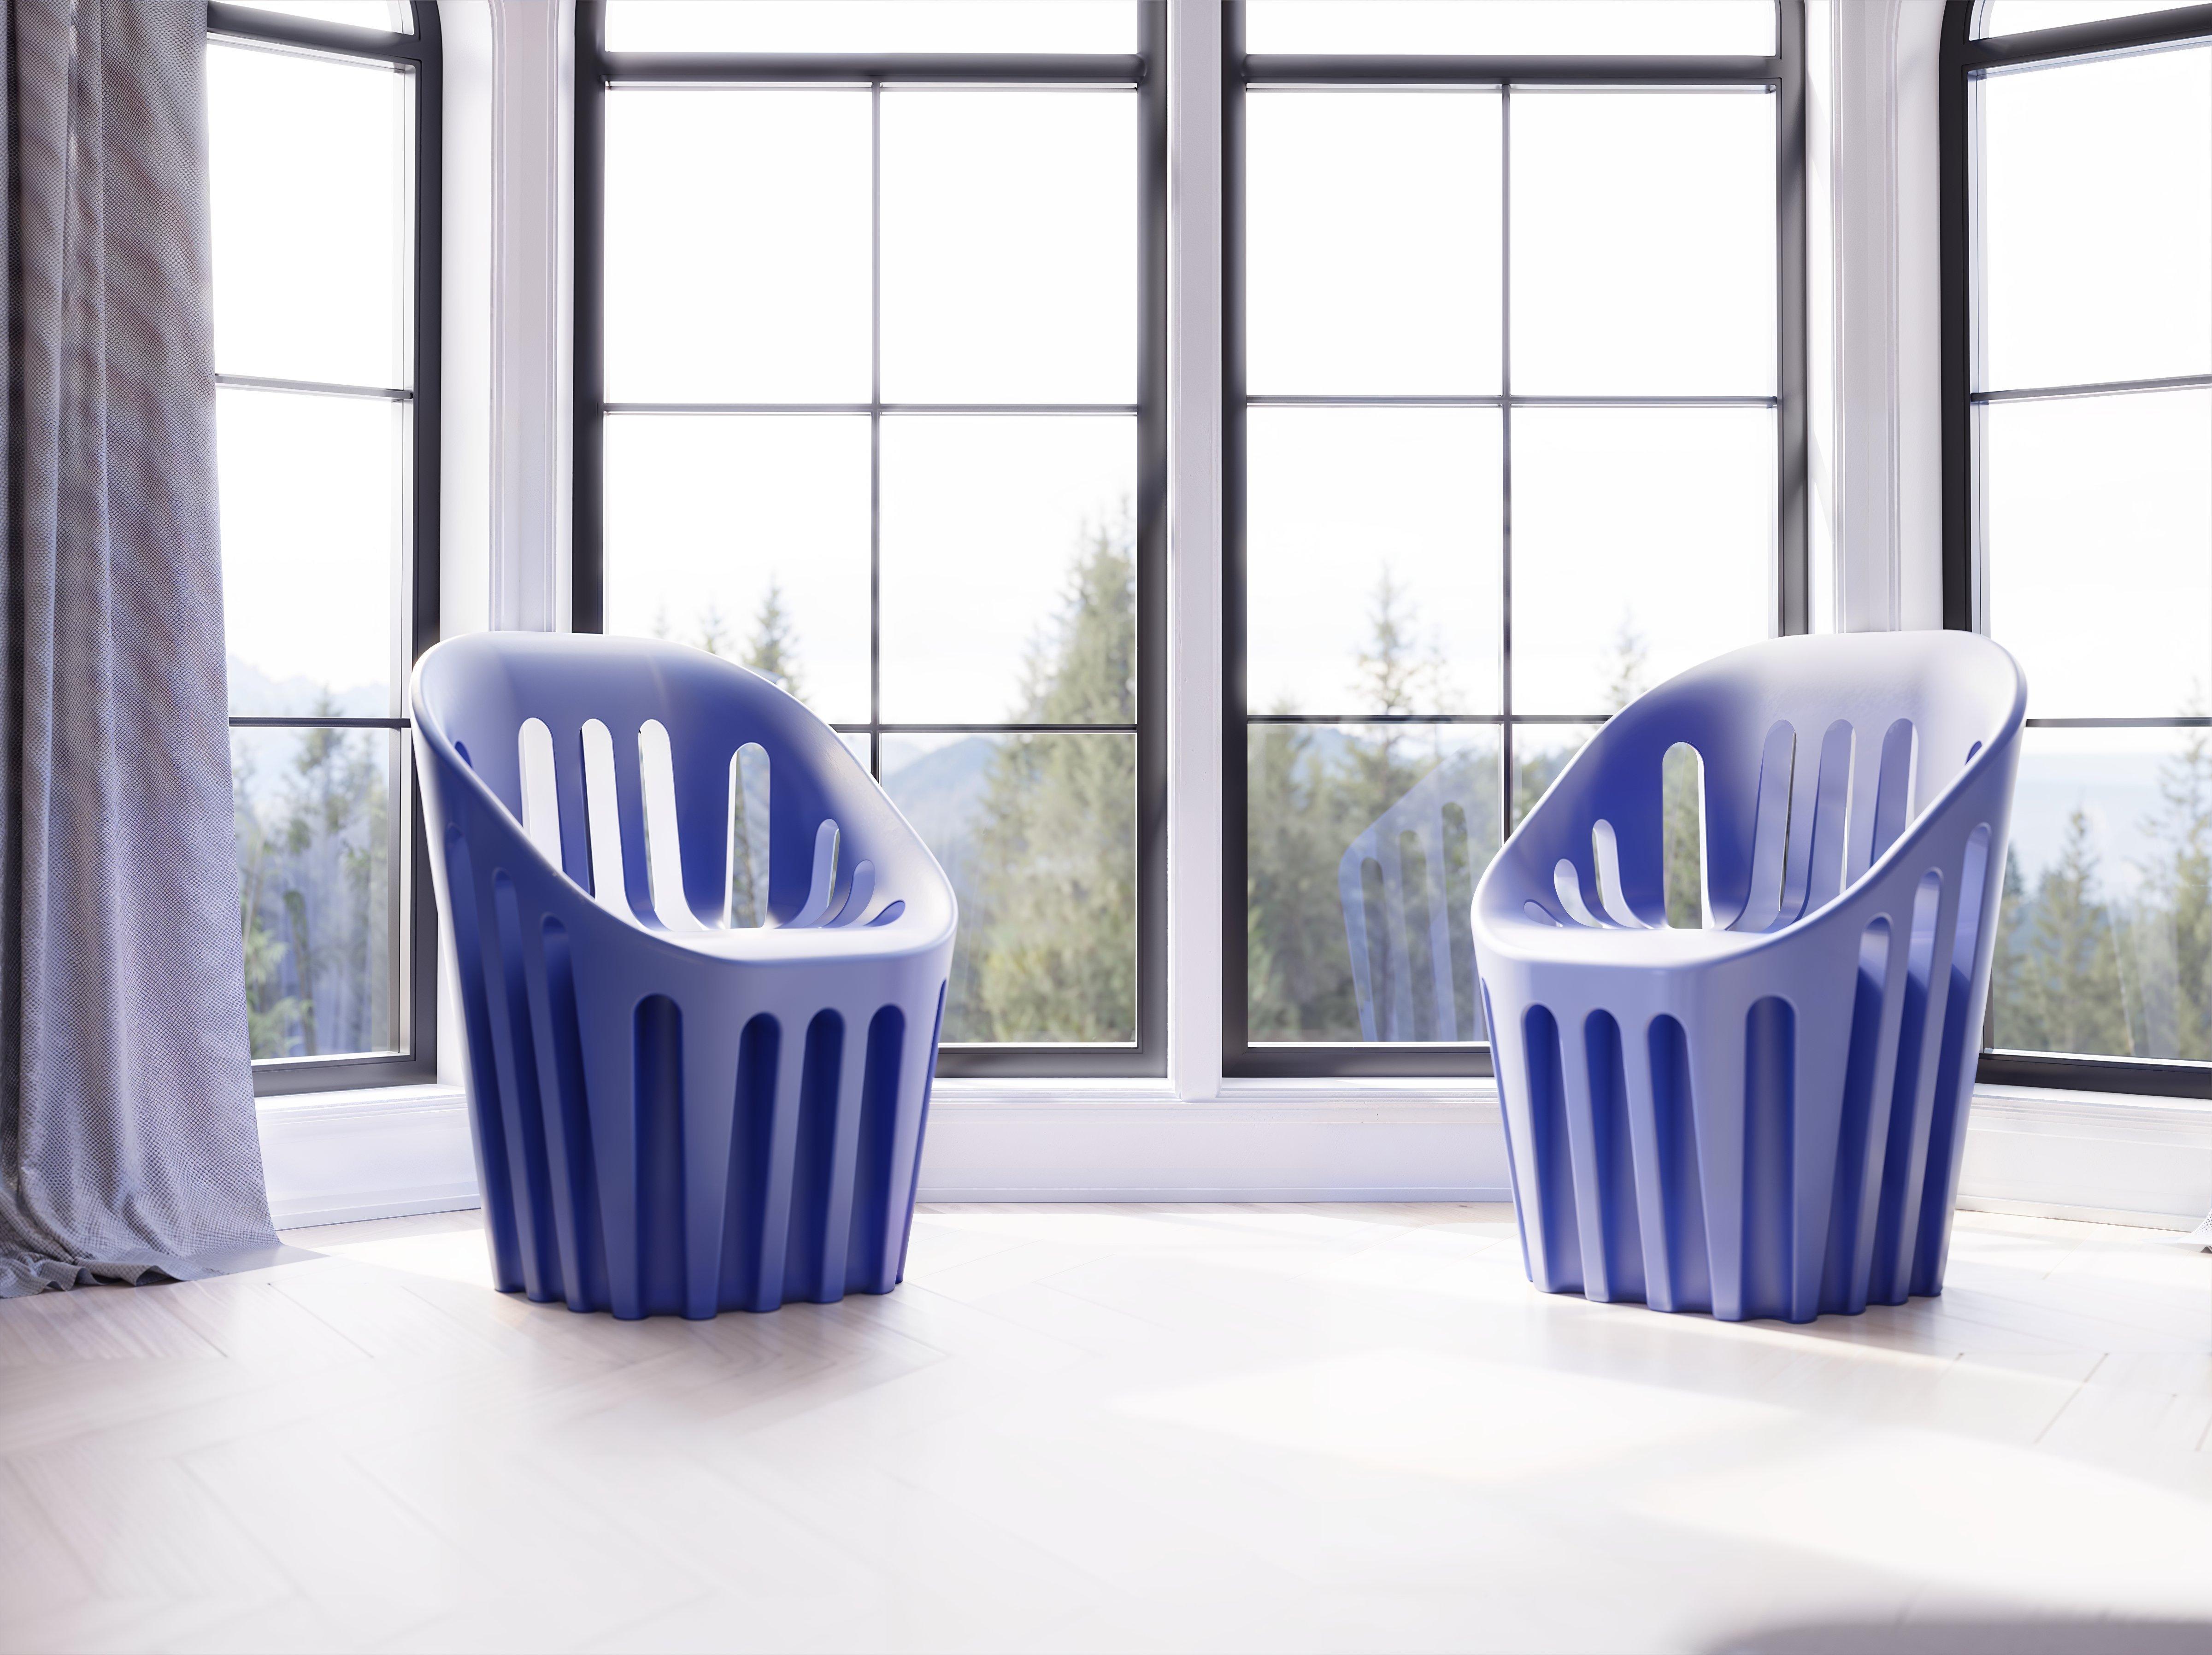 Metallisch-silbern glänzender Coliseum-Stuhl von Alvaro Uribe
Abmessungen: T 65 x B 66 x H 86 cm. Sitzhöhe: 45 cm.
MATERIALIEN: Glänzend lackiertes Polyethylen.
Gewicht: 11 kg.

Erhältlich in verschiedenen Farbvarianten. Dieses Produkt ist für die